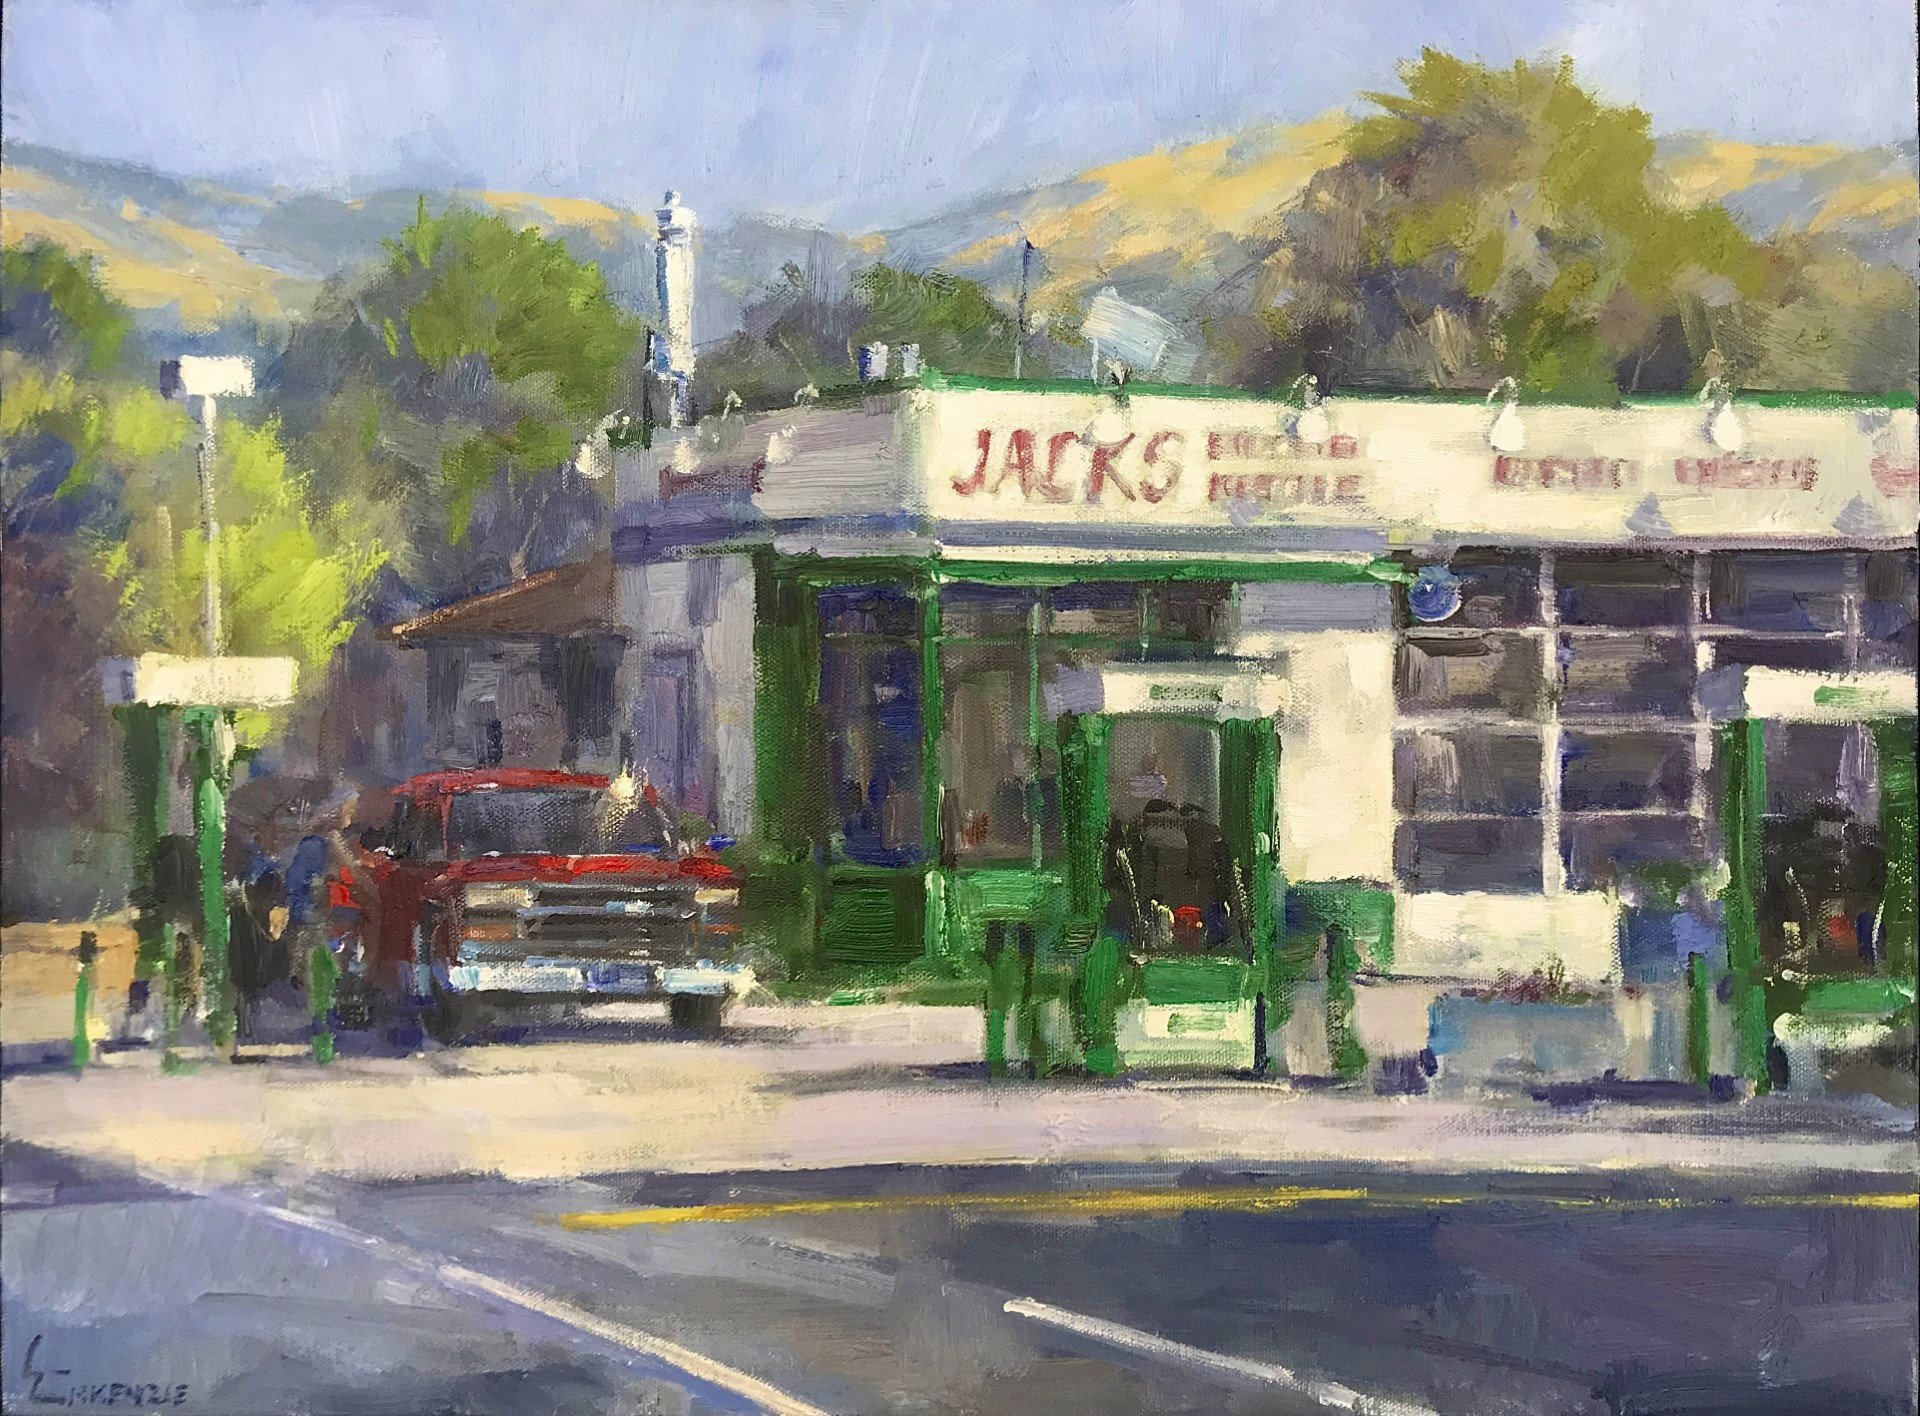  “Jacks Sonoma” 18x24, Oil on Canvas. 